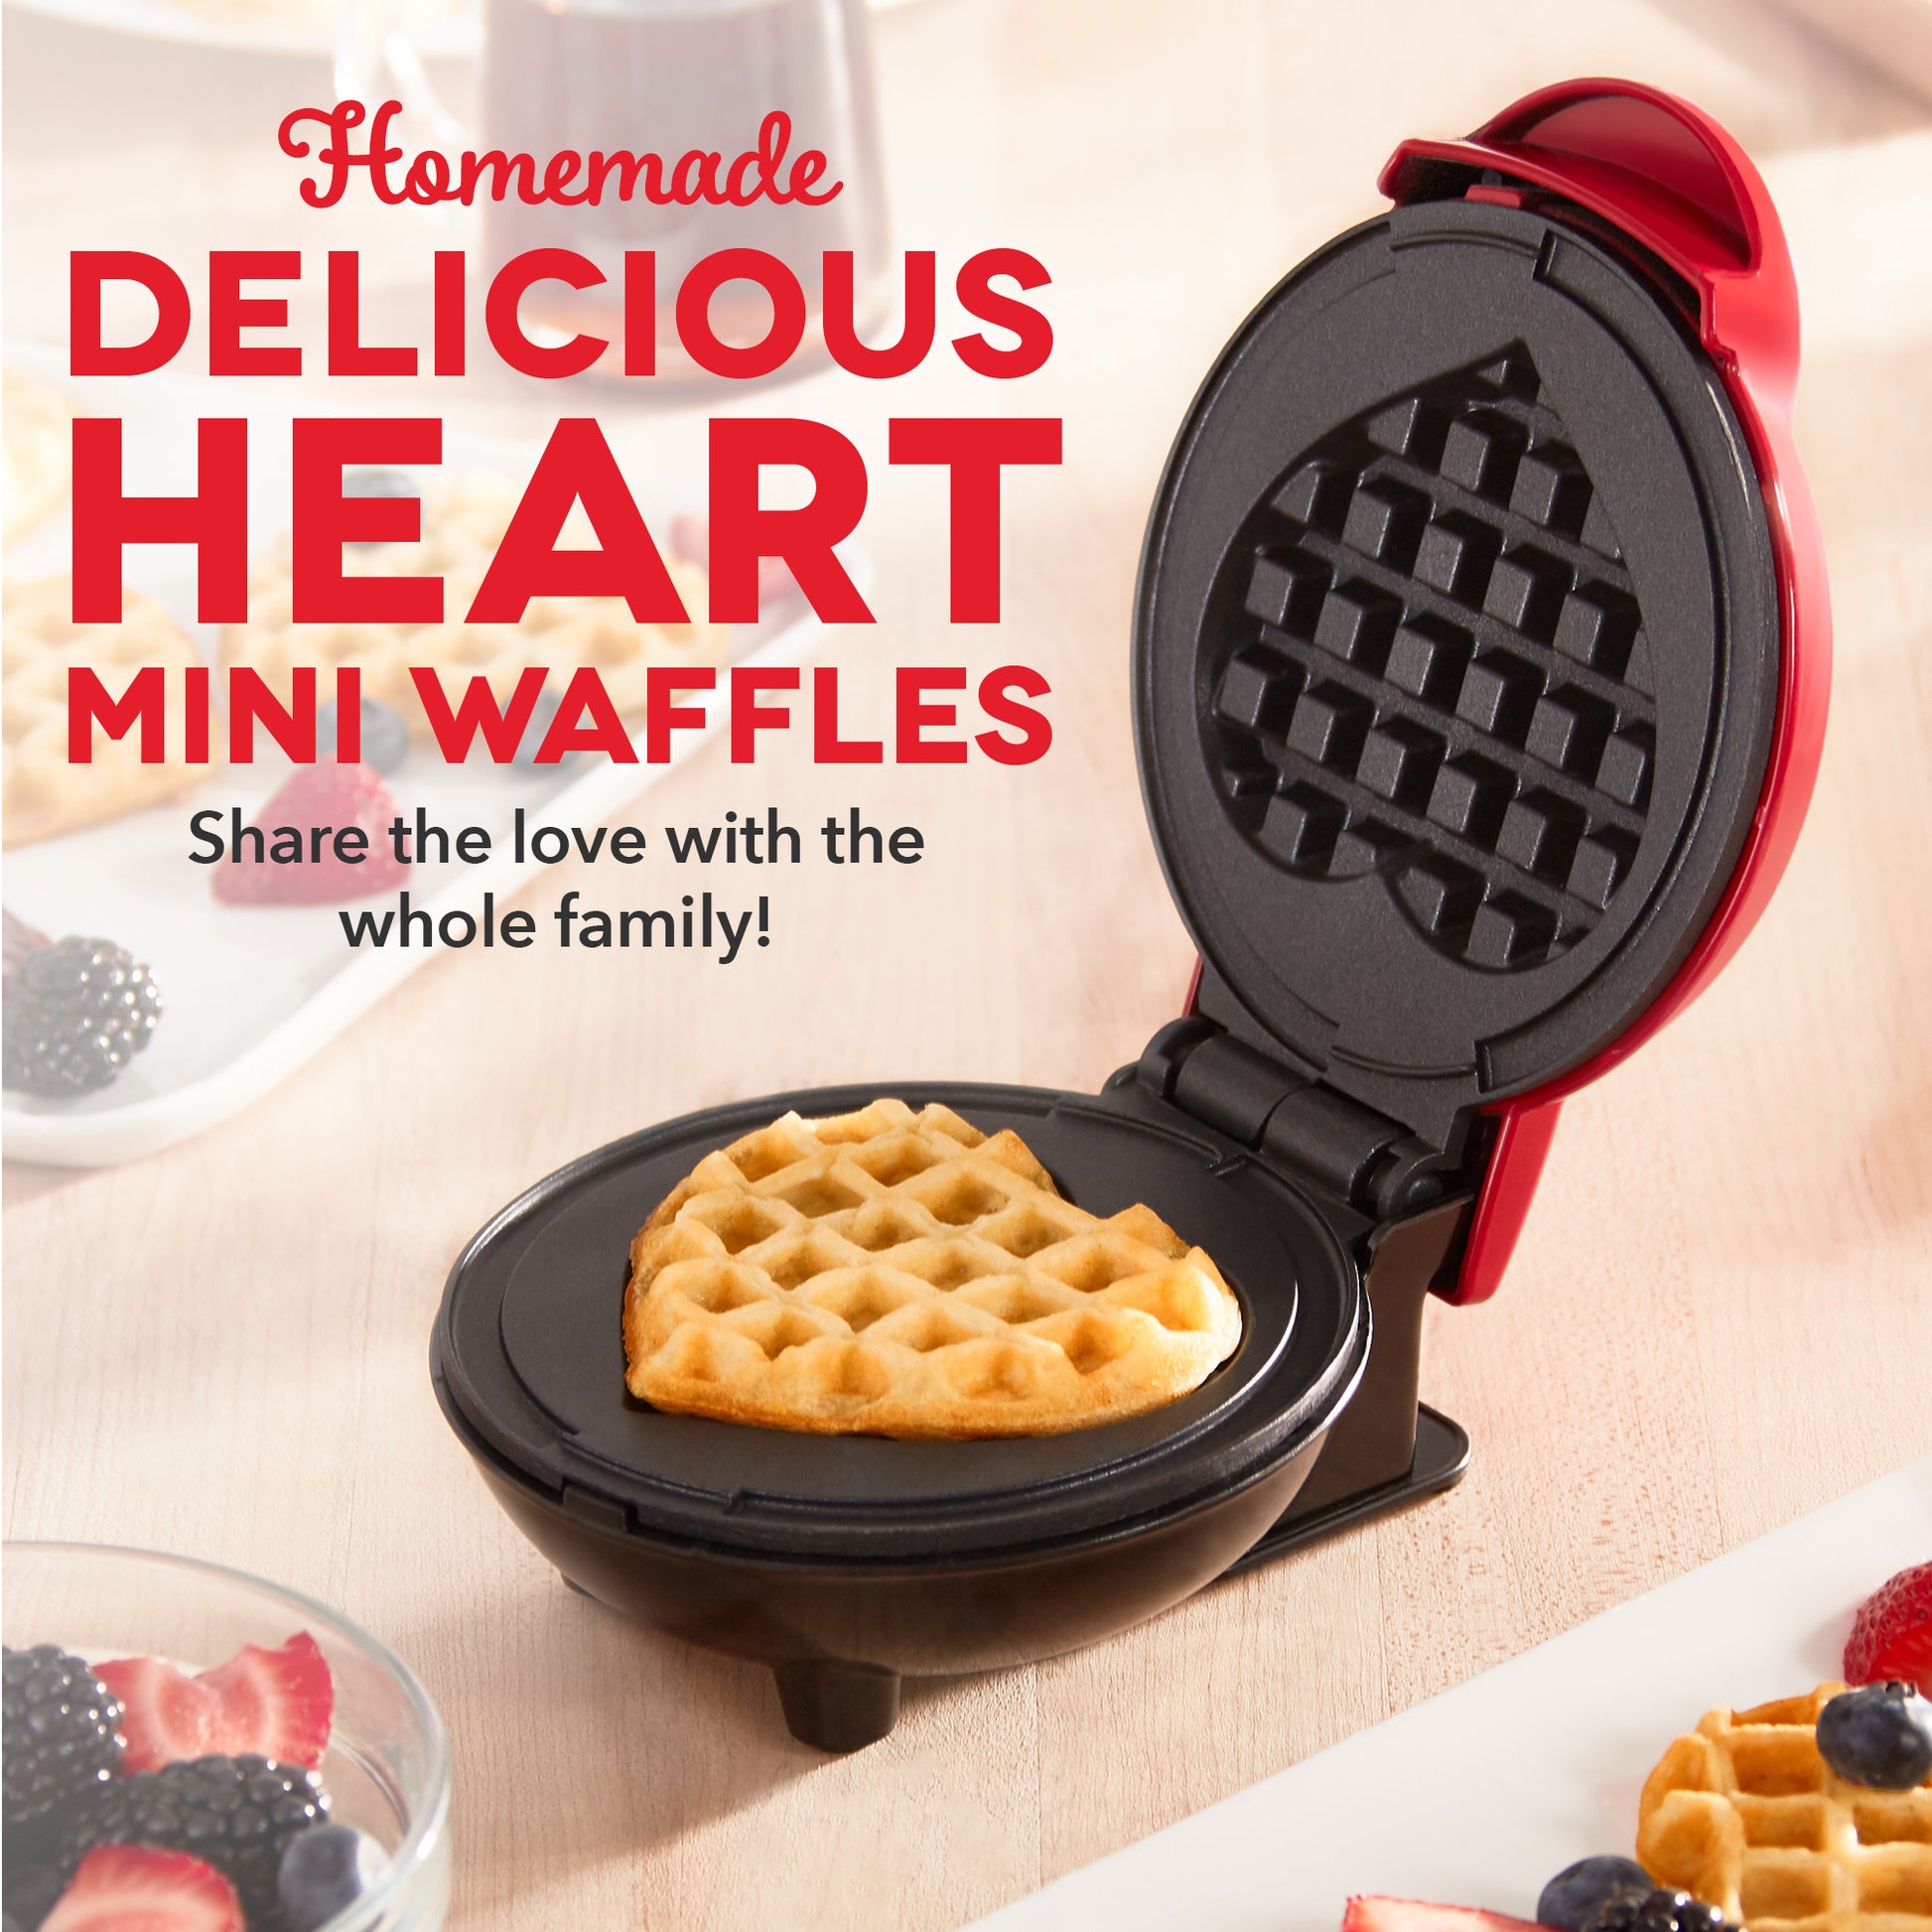 Dash Heart Mini Waffle Maker by Dwell - Dwell